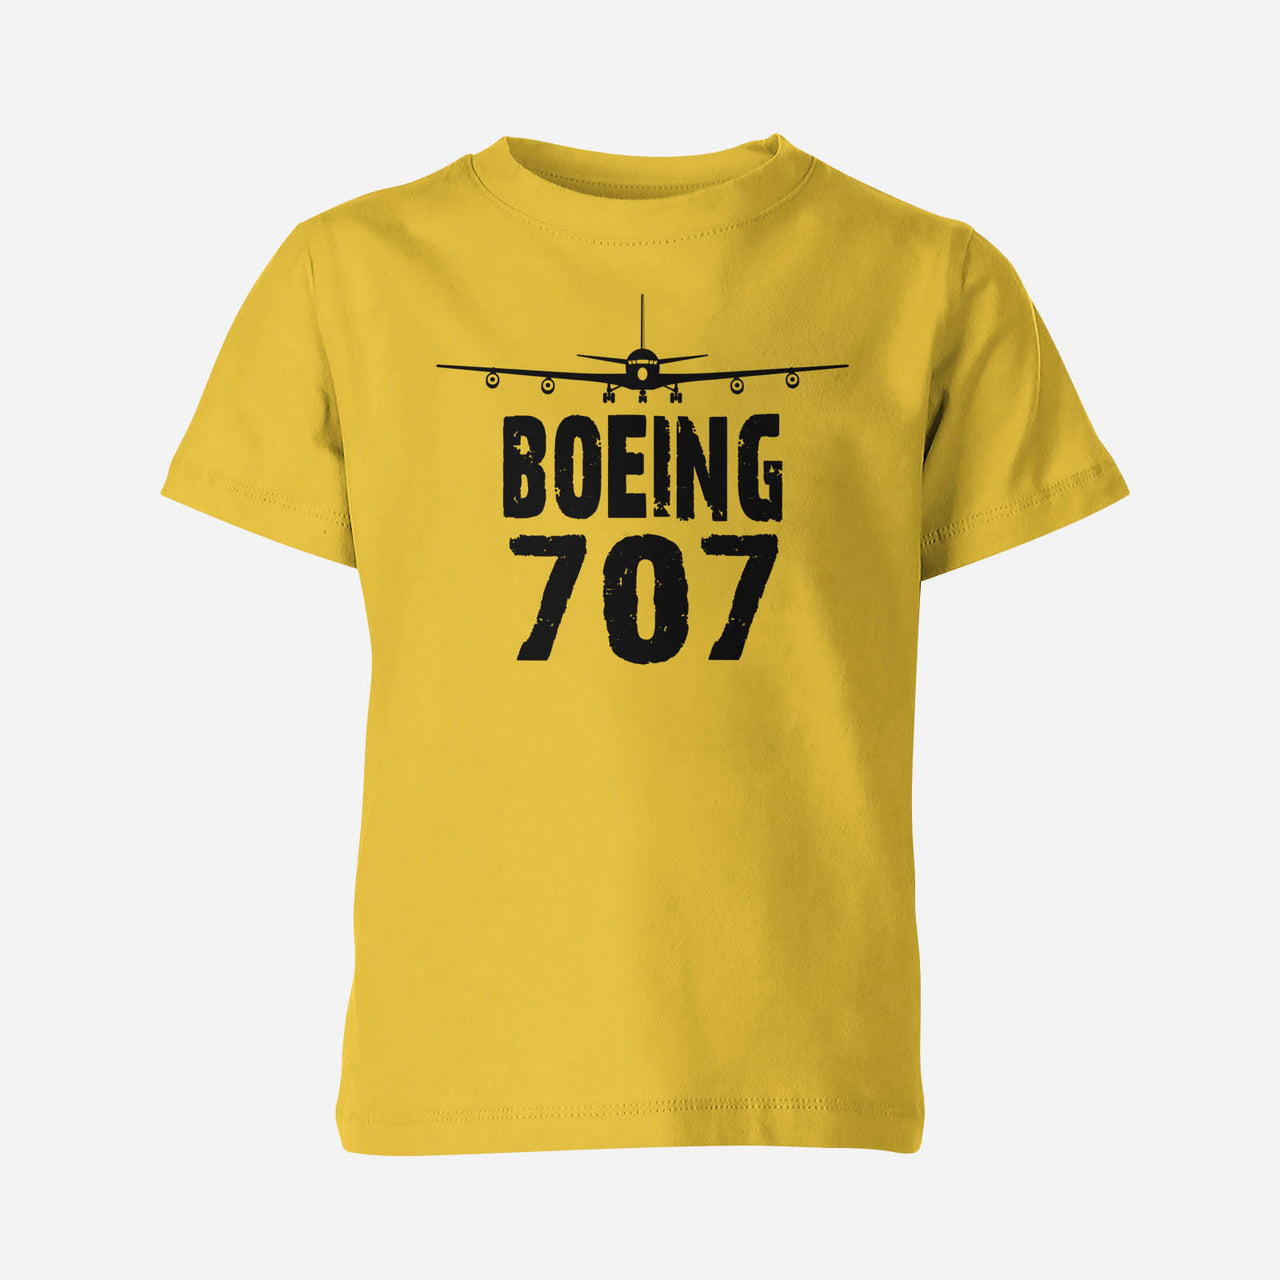 Boeing 707 & Plane Designed Children T-Shirts